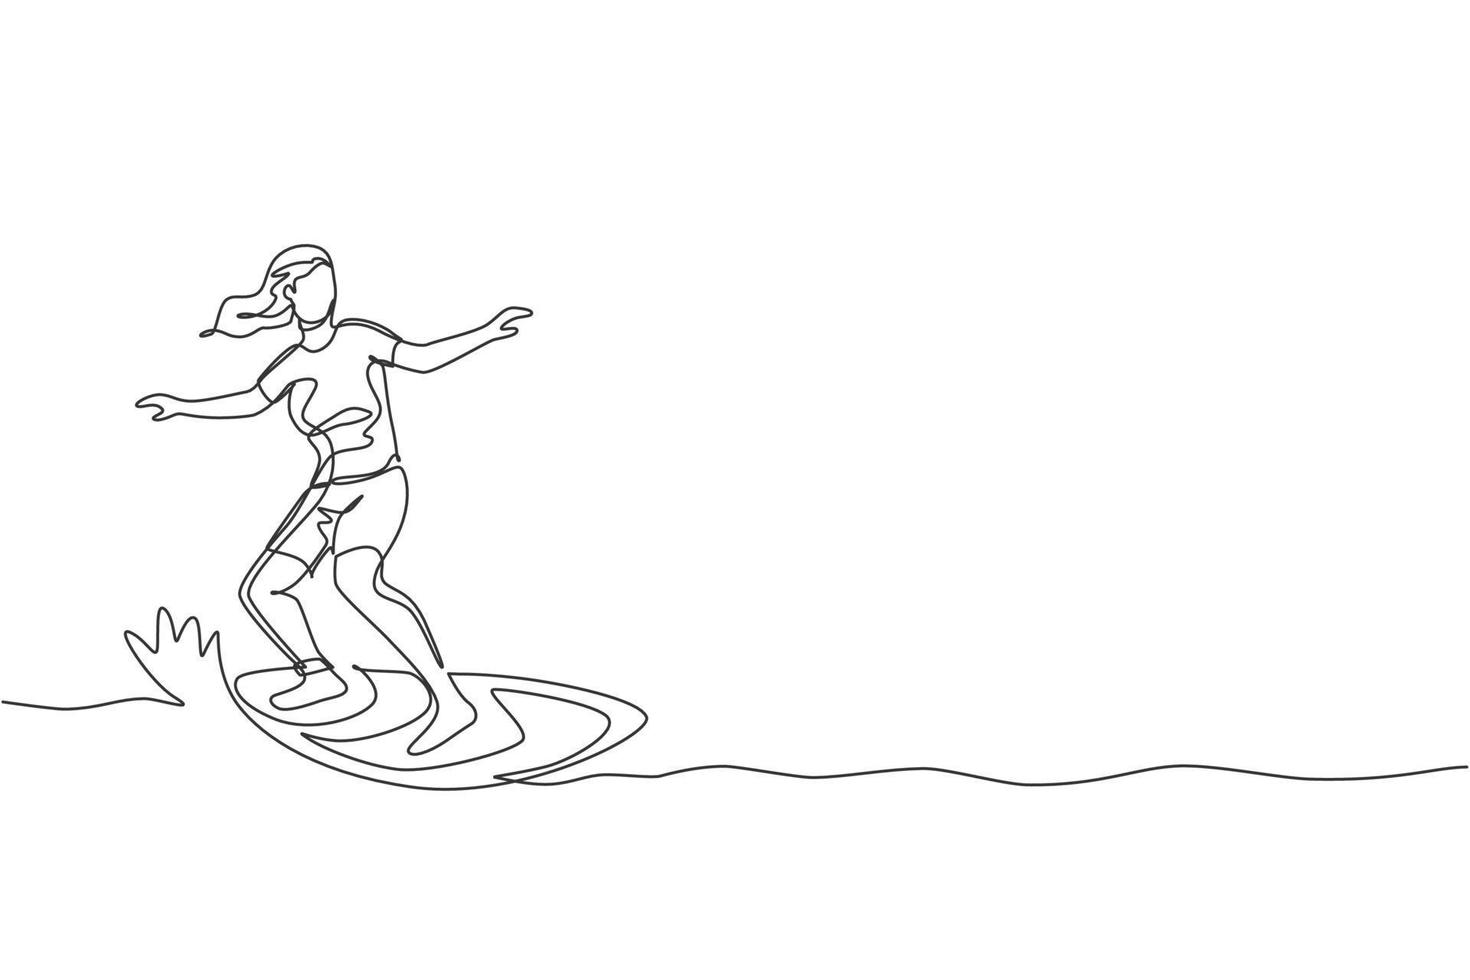 een doorlopende lijntekening jonge gelukkige toeristische surfer die surfen op de golvende oceaan uitoefent. gezond extreem watersportconcept. zomervakantie. dynamische enkele lijn tekenen ontwerp vector grafische afbeelding